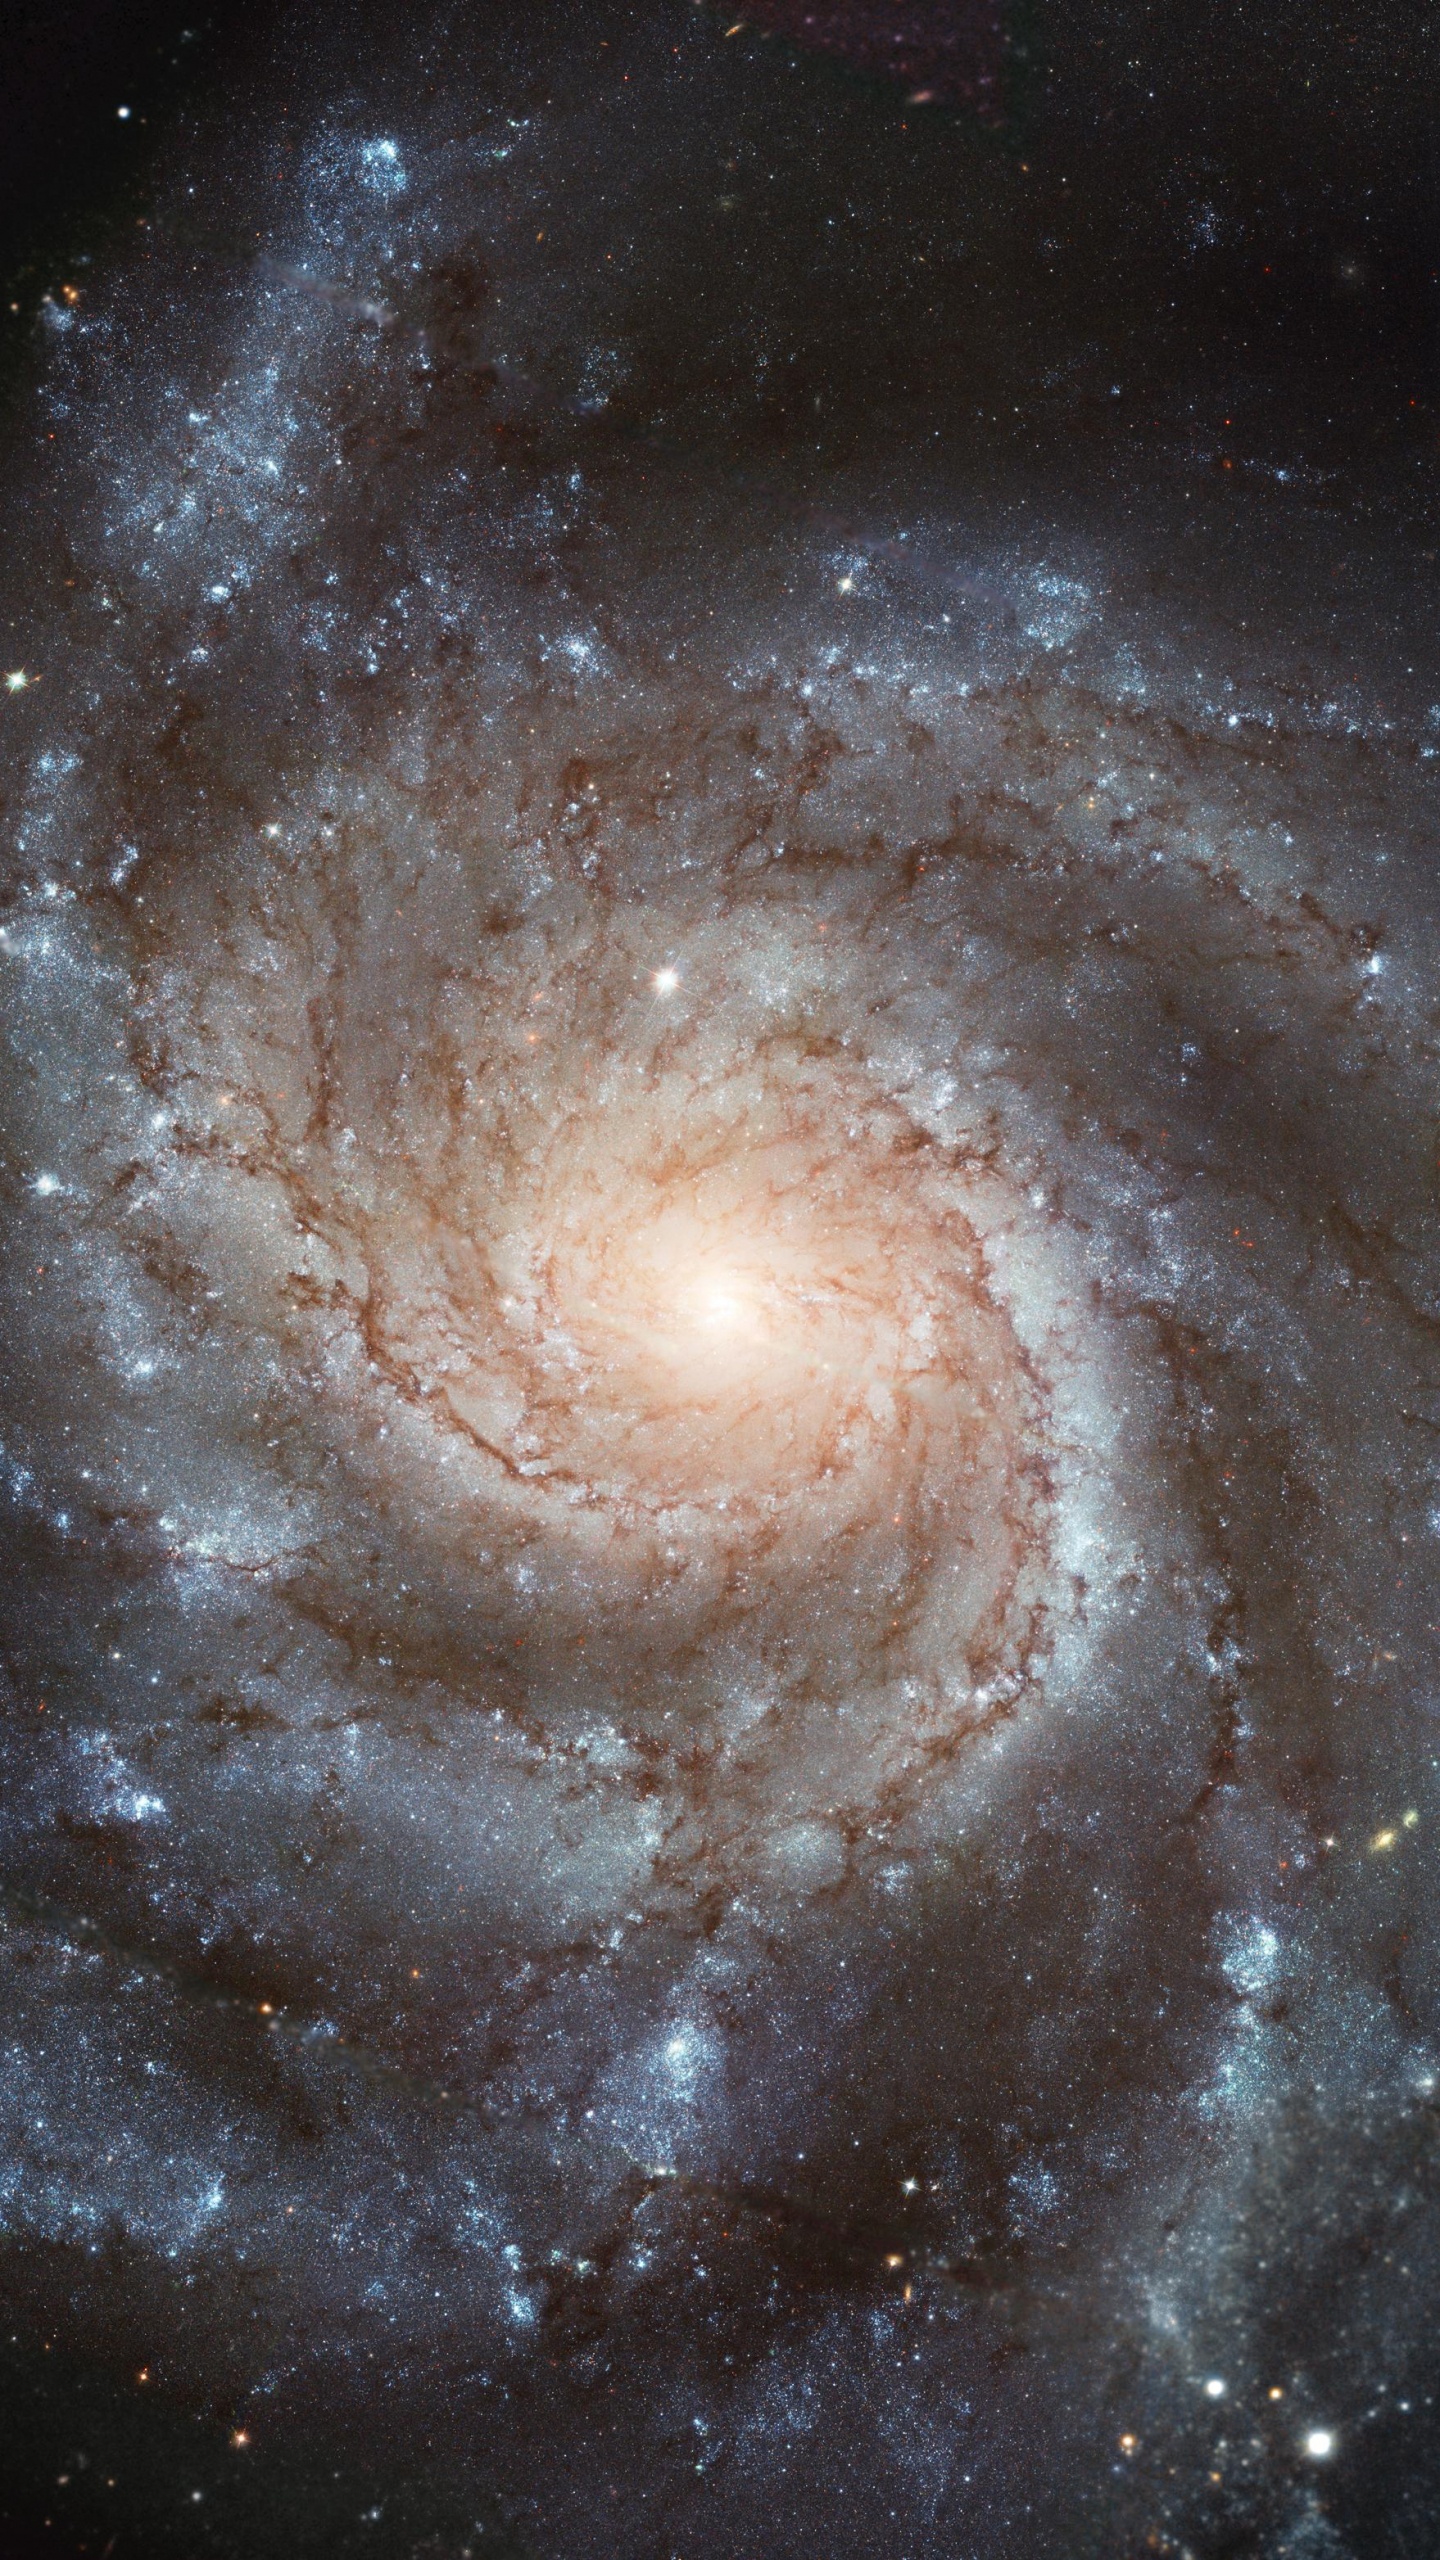 螺旋星系, 哈勃太空望远镜, 天文学, 天文学对象, 宇宙 壁纸 1440x2560 允许